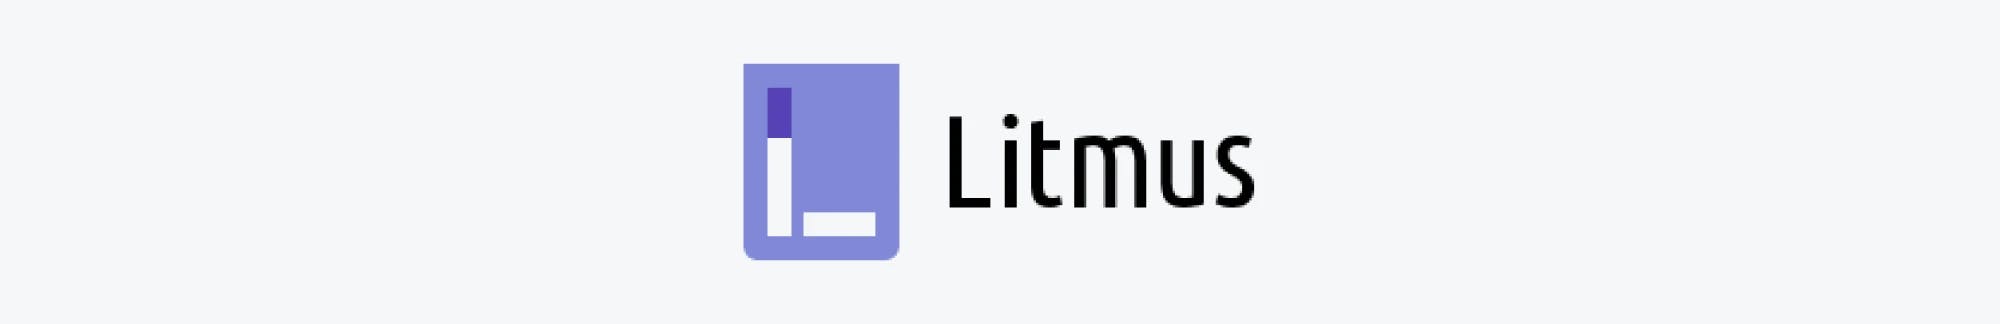 LitmusChaos logo